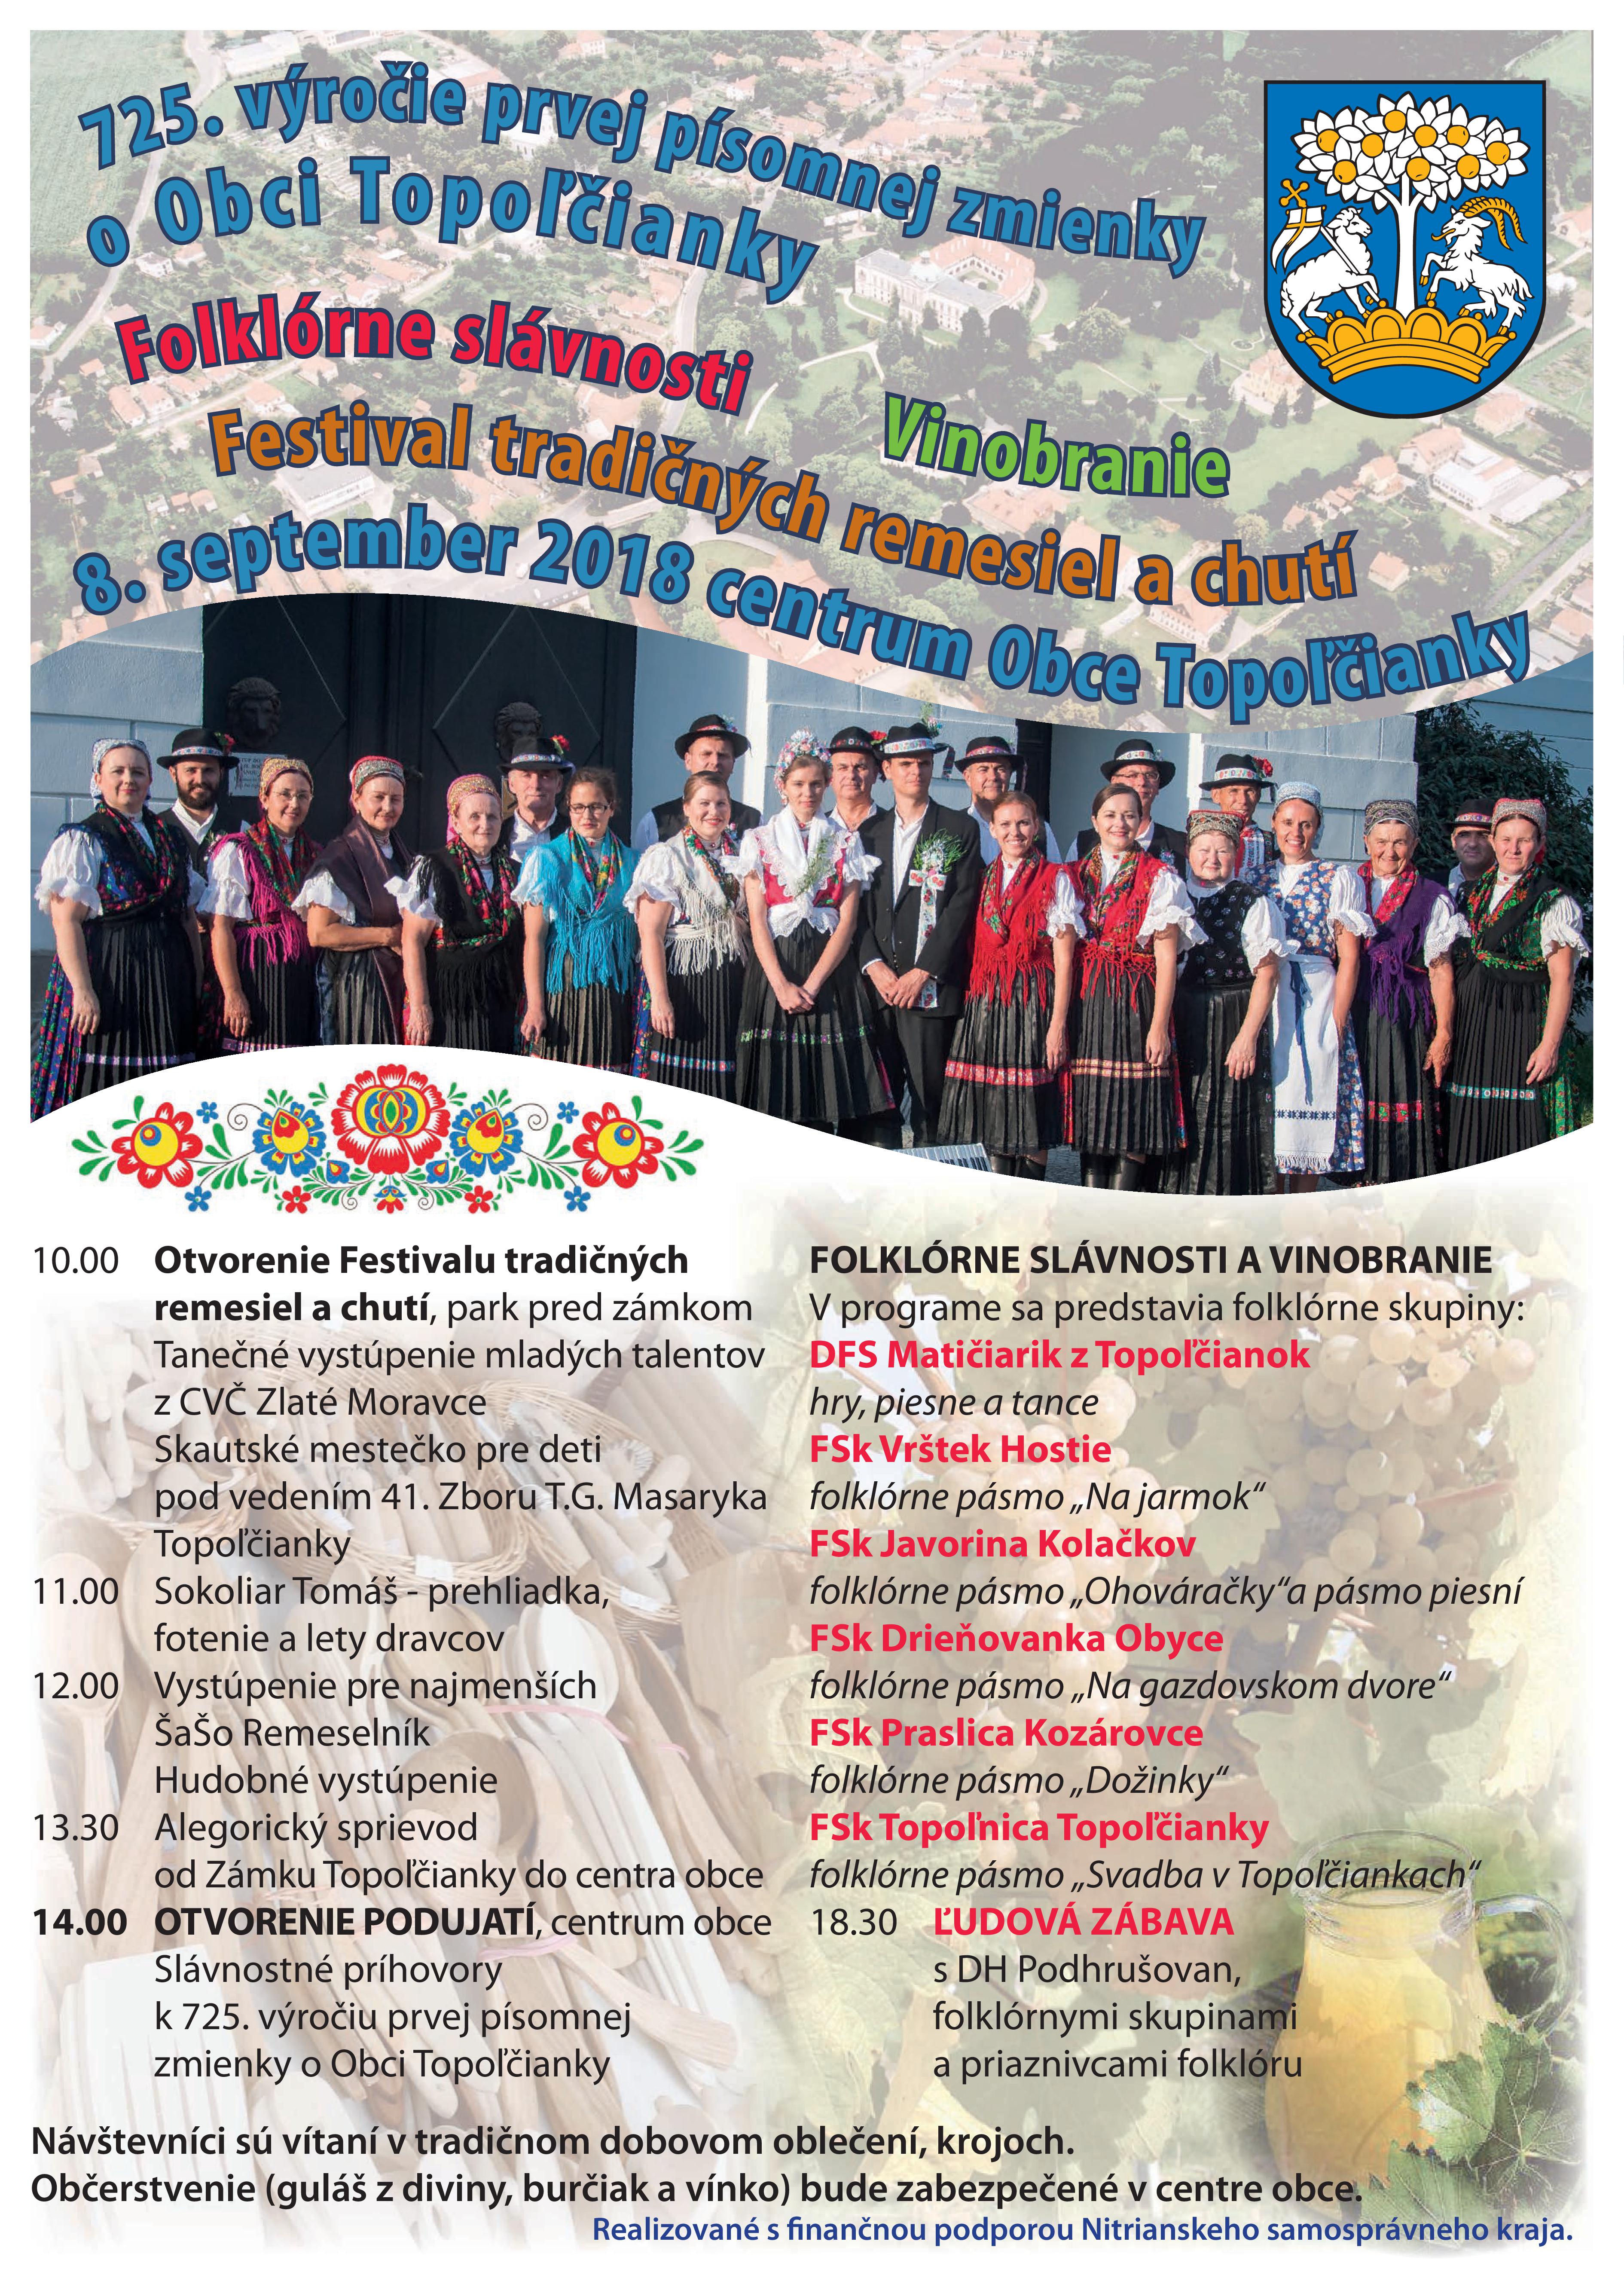 Folklórne slávnosti, Vinobranie,  Festival tradičných remesiel a chutí